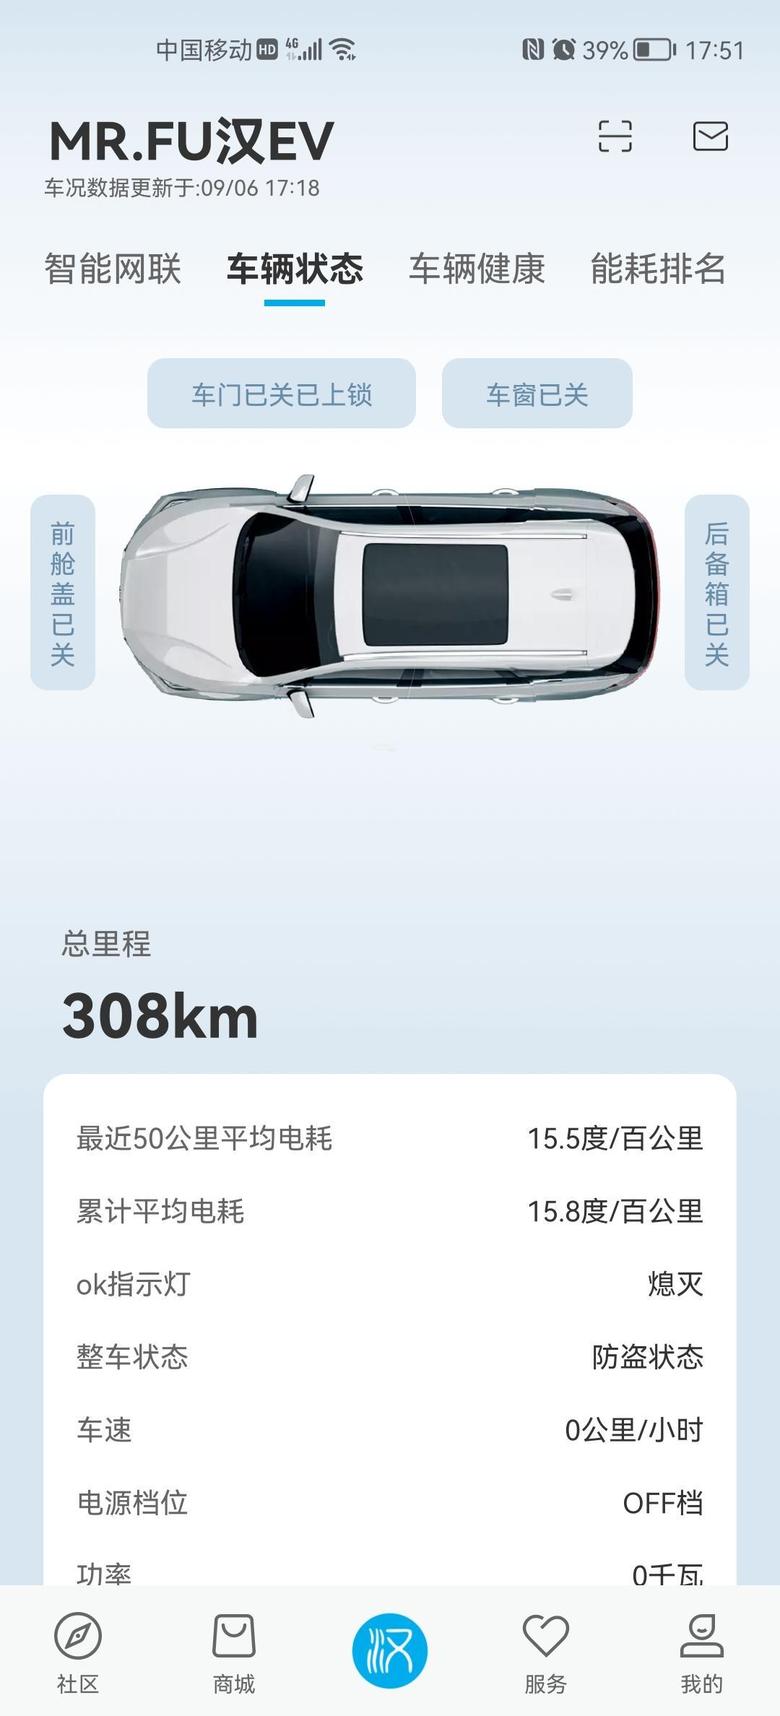 汉ev 8月份订车，8月31号提车，EV长续航豪华版，深圳提车全部落地22.4，不知道你们的成交价多少？